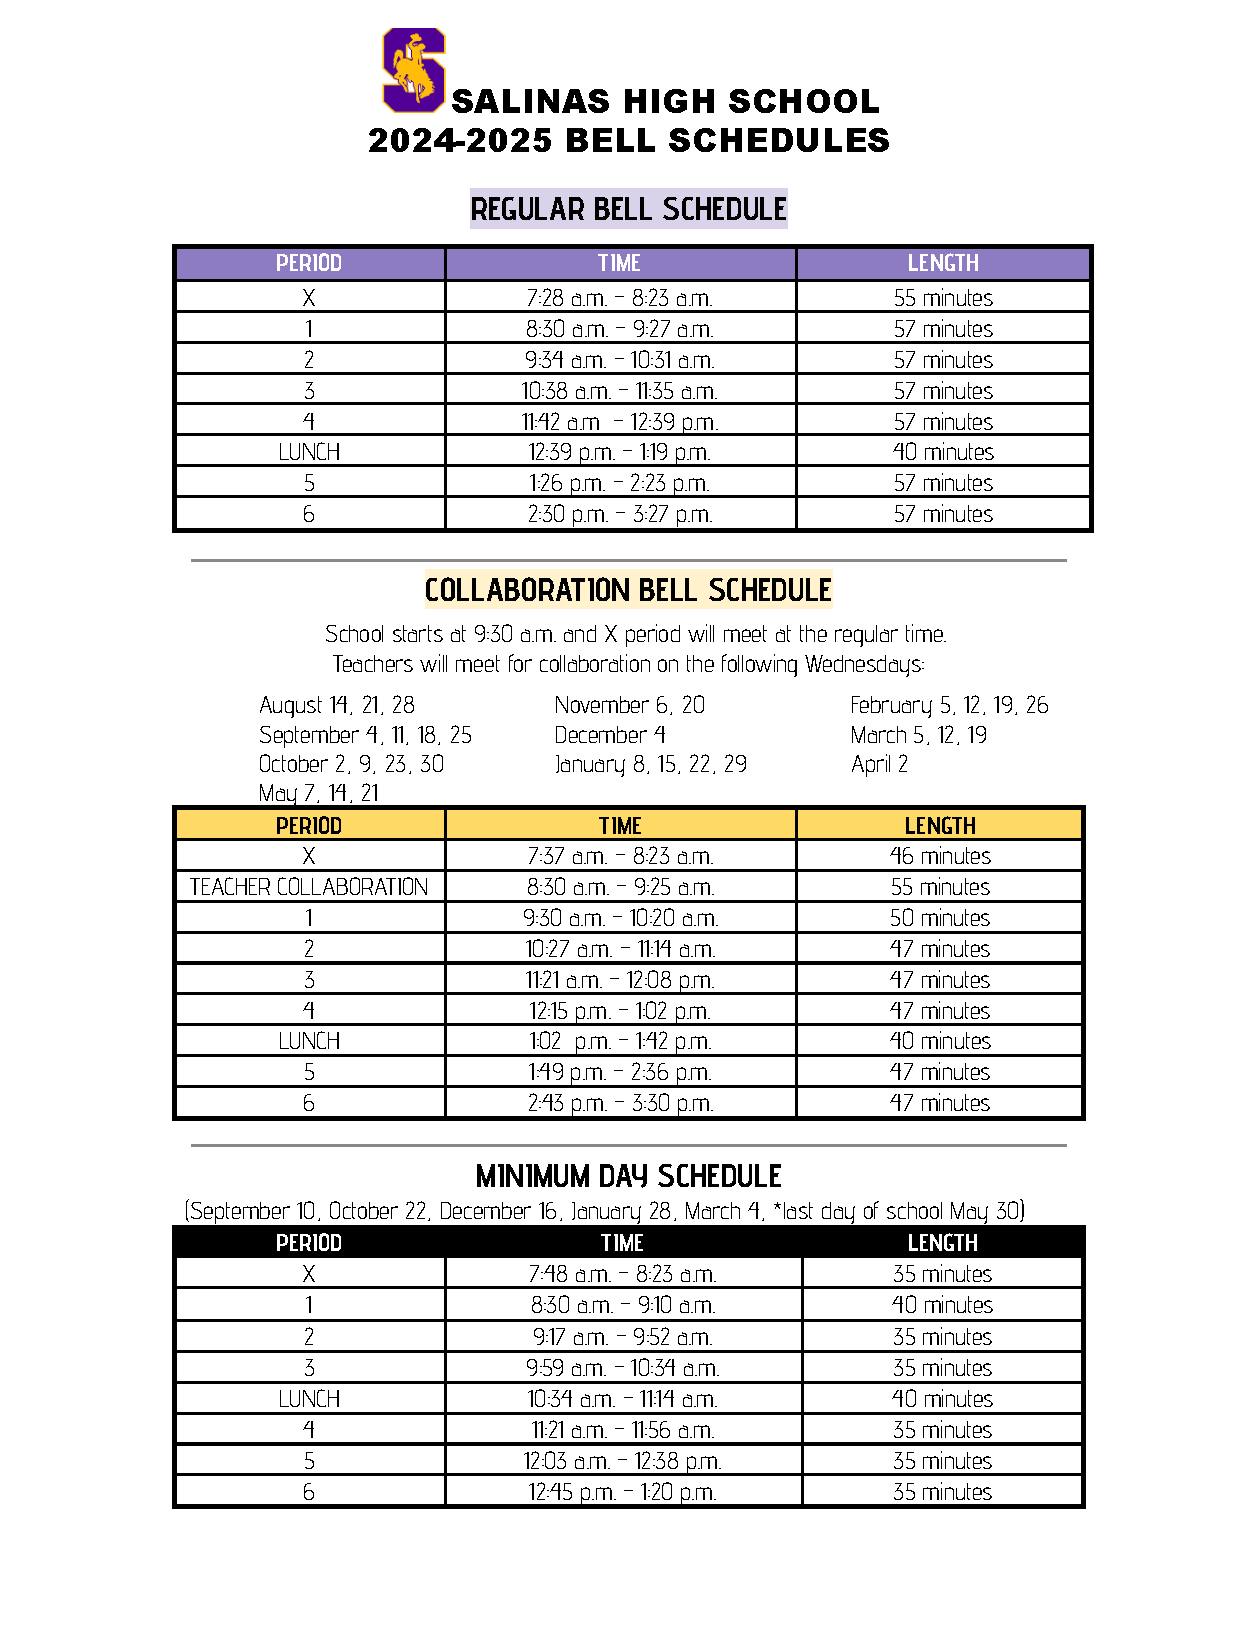 SHS Bell Schedule